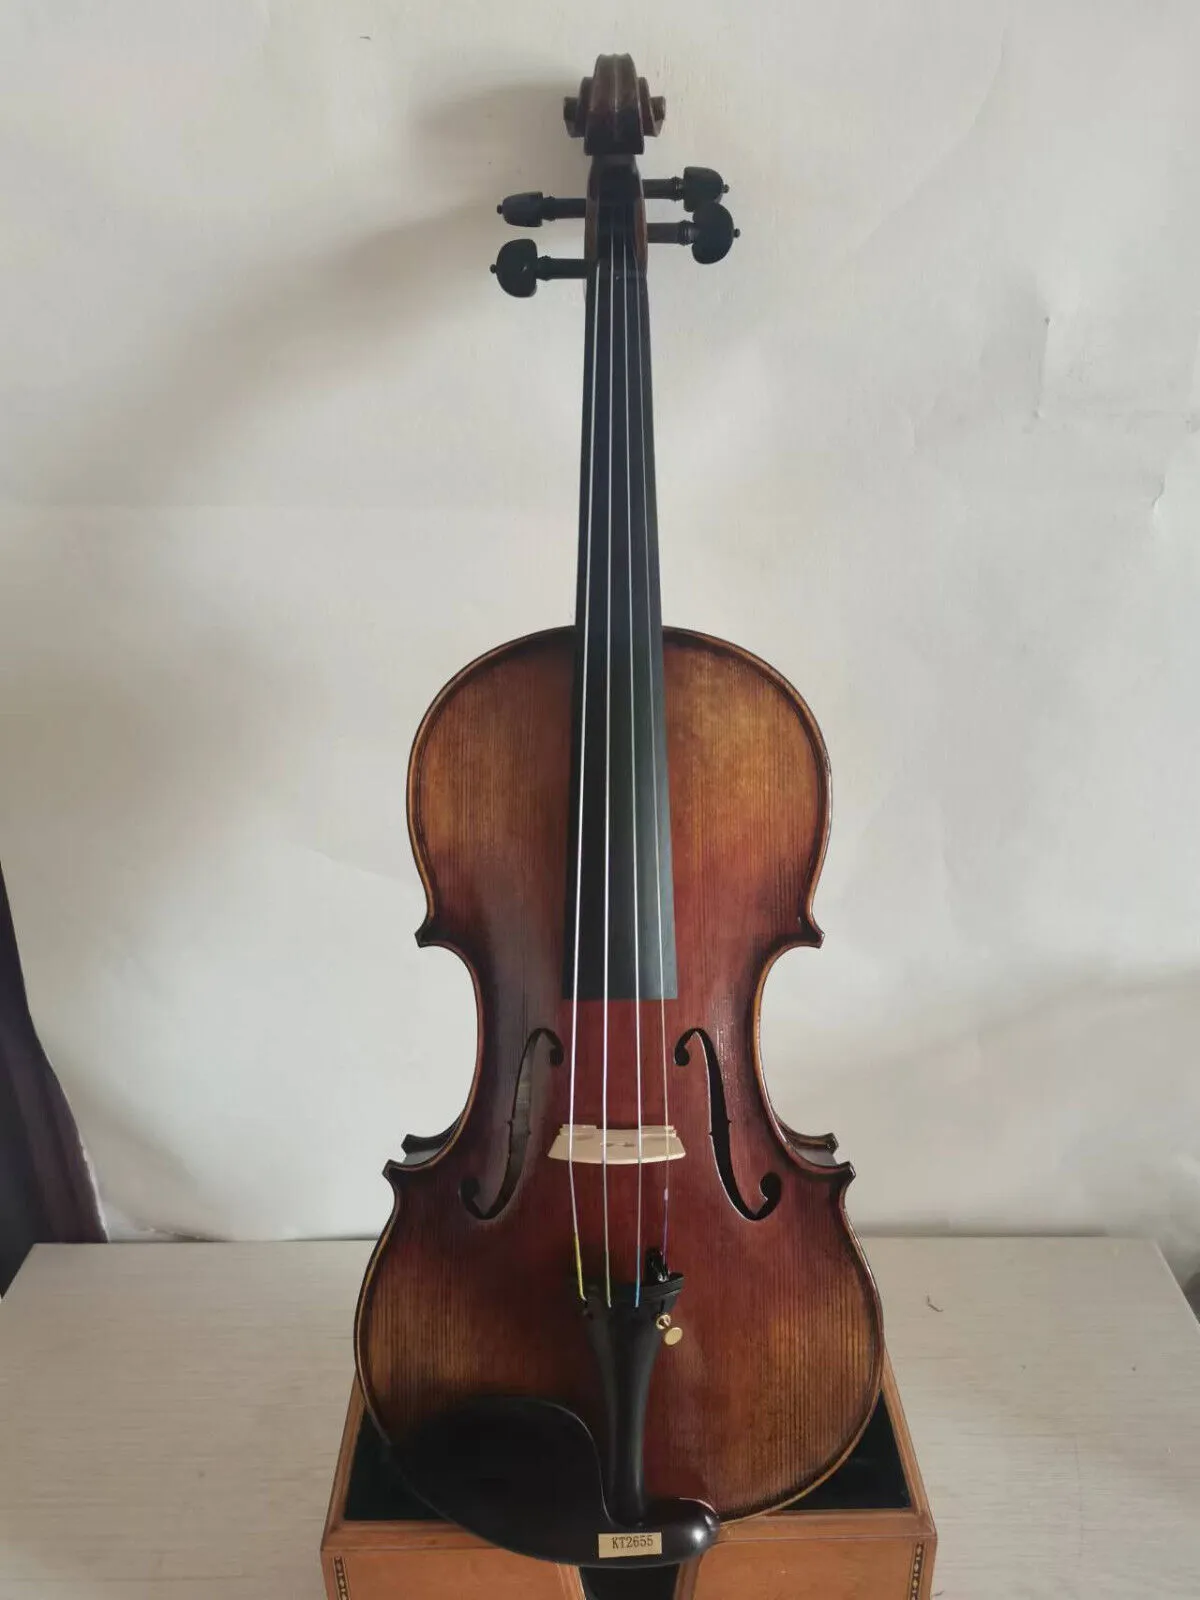 NUOVO violino 4/4 modello Guarneri fondo in acero top in abete fatto a mano bel suono K2655